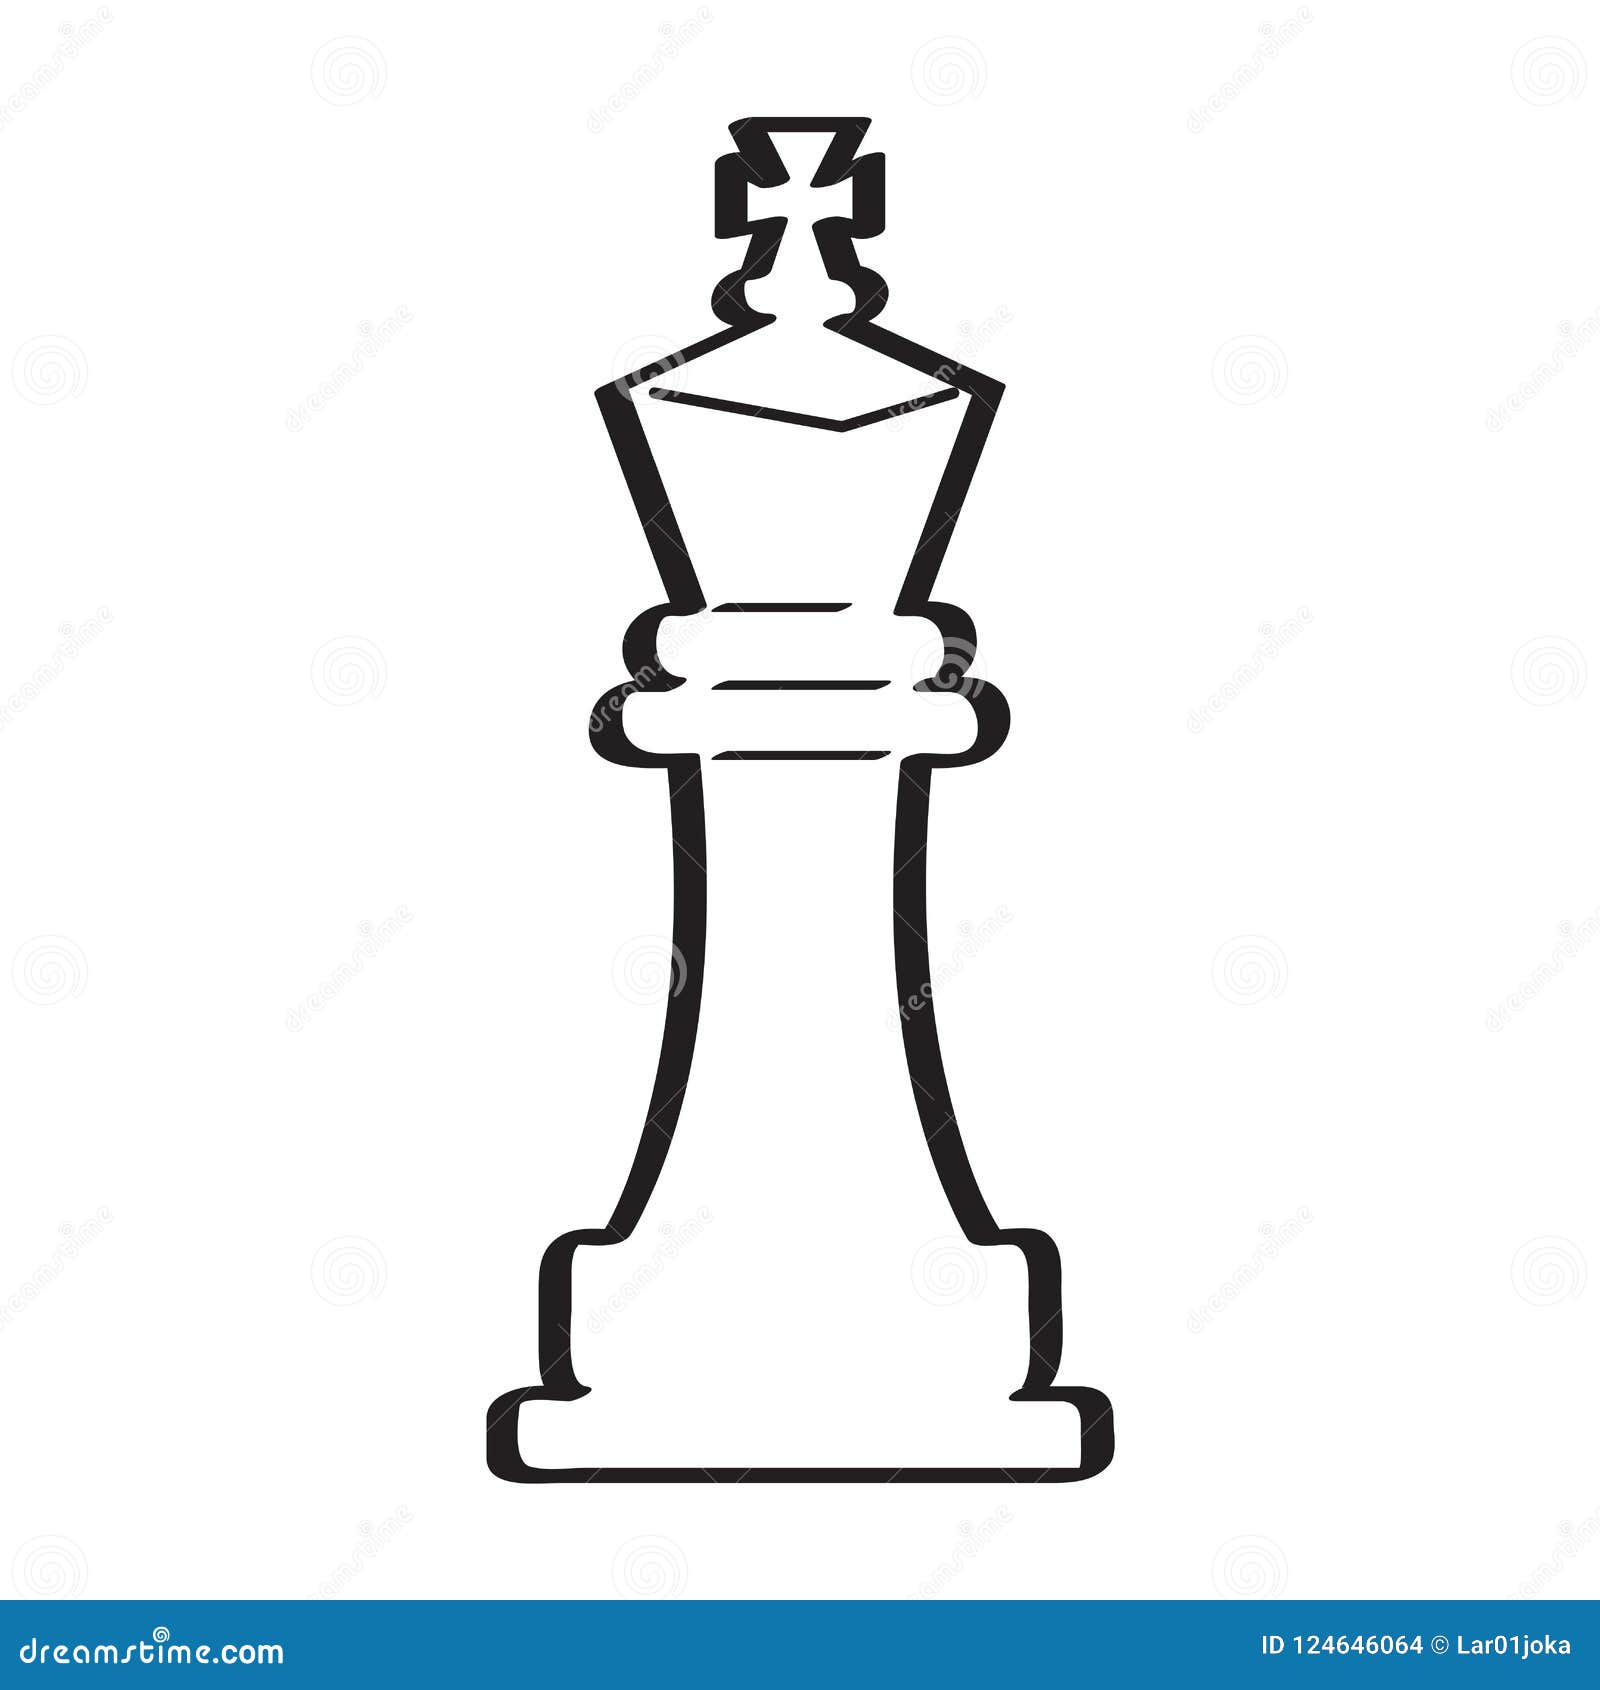 Os Movimentos Do Rei Da Xadrez Ilustração Stock - Ilustração de  companheiro, posto: 59479442